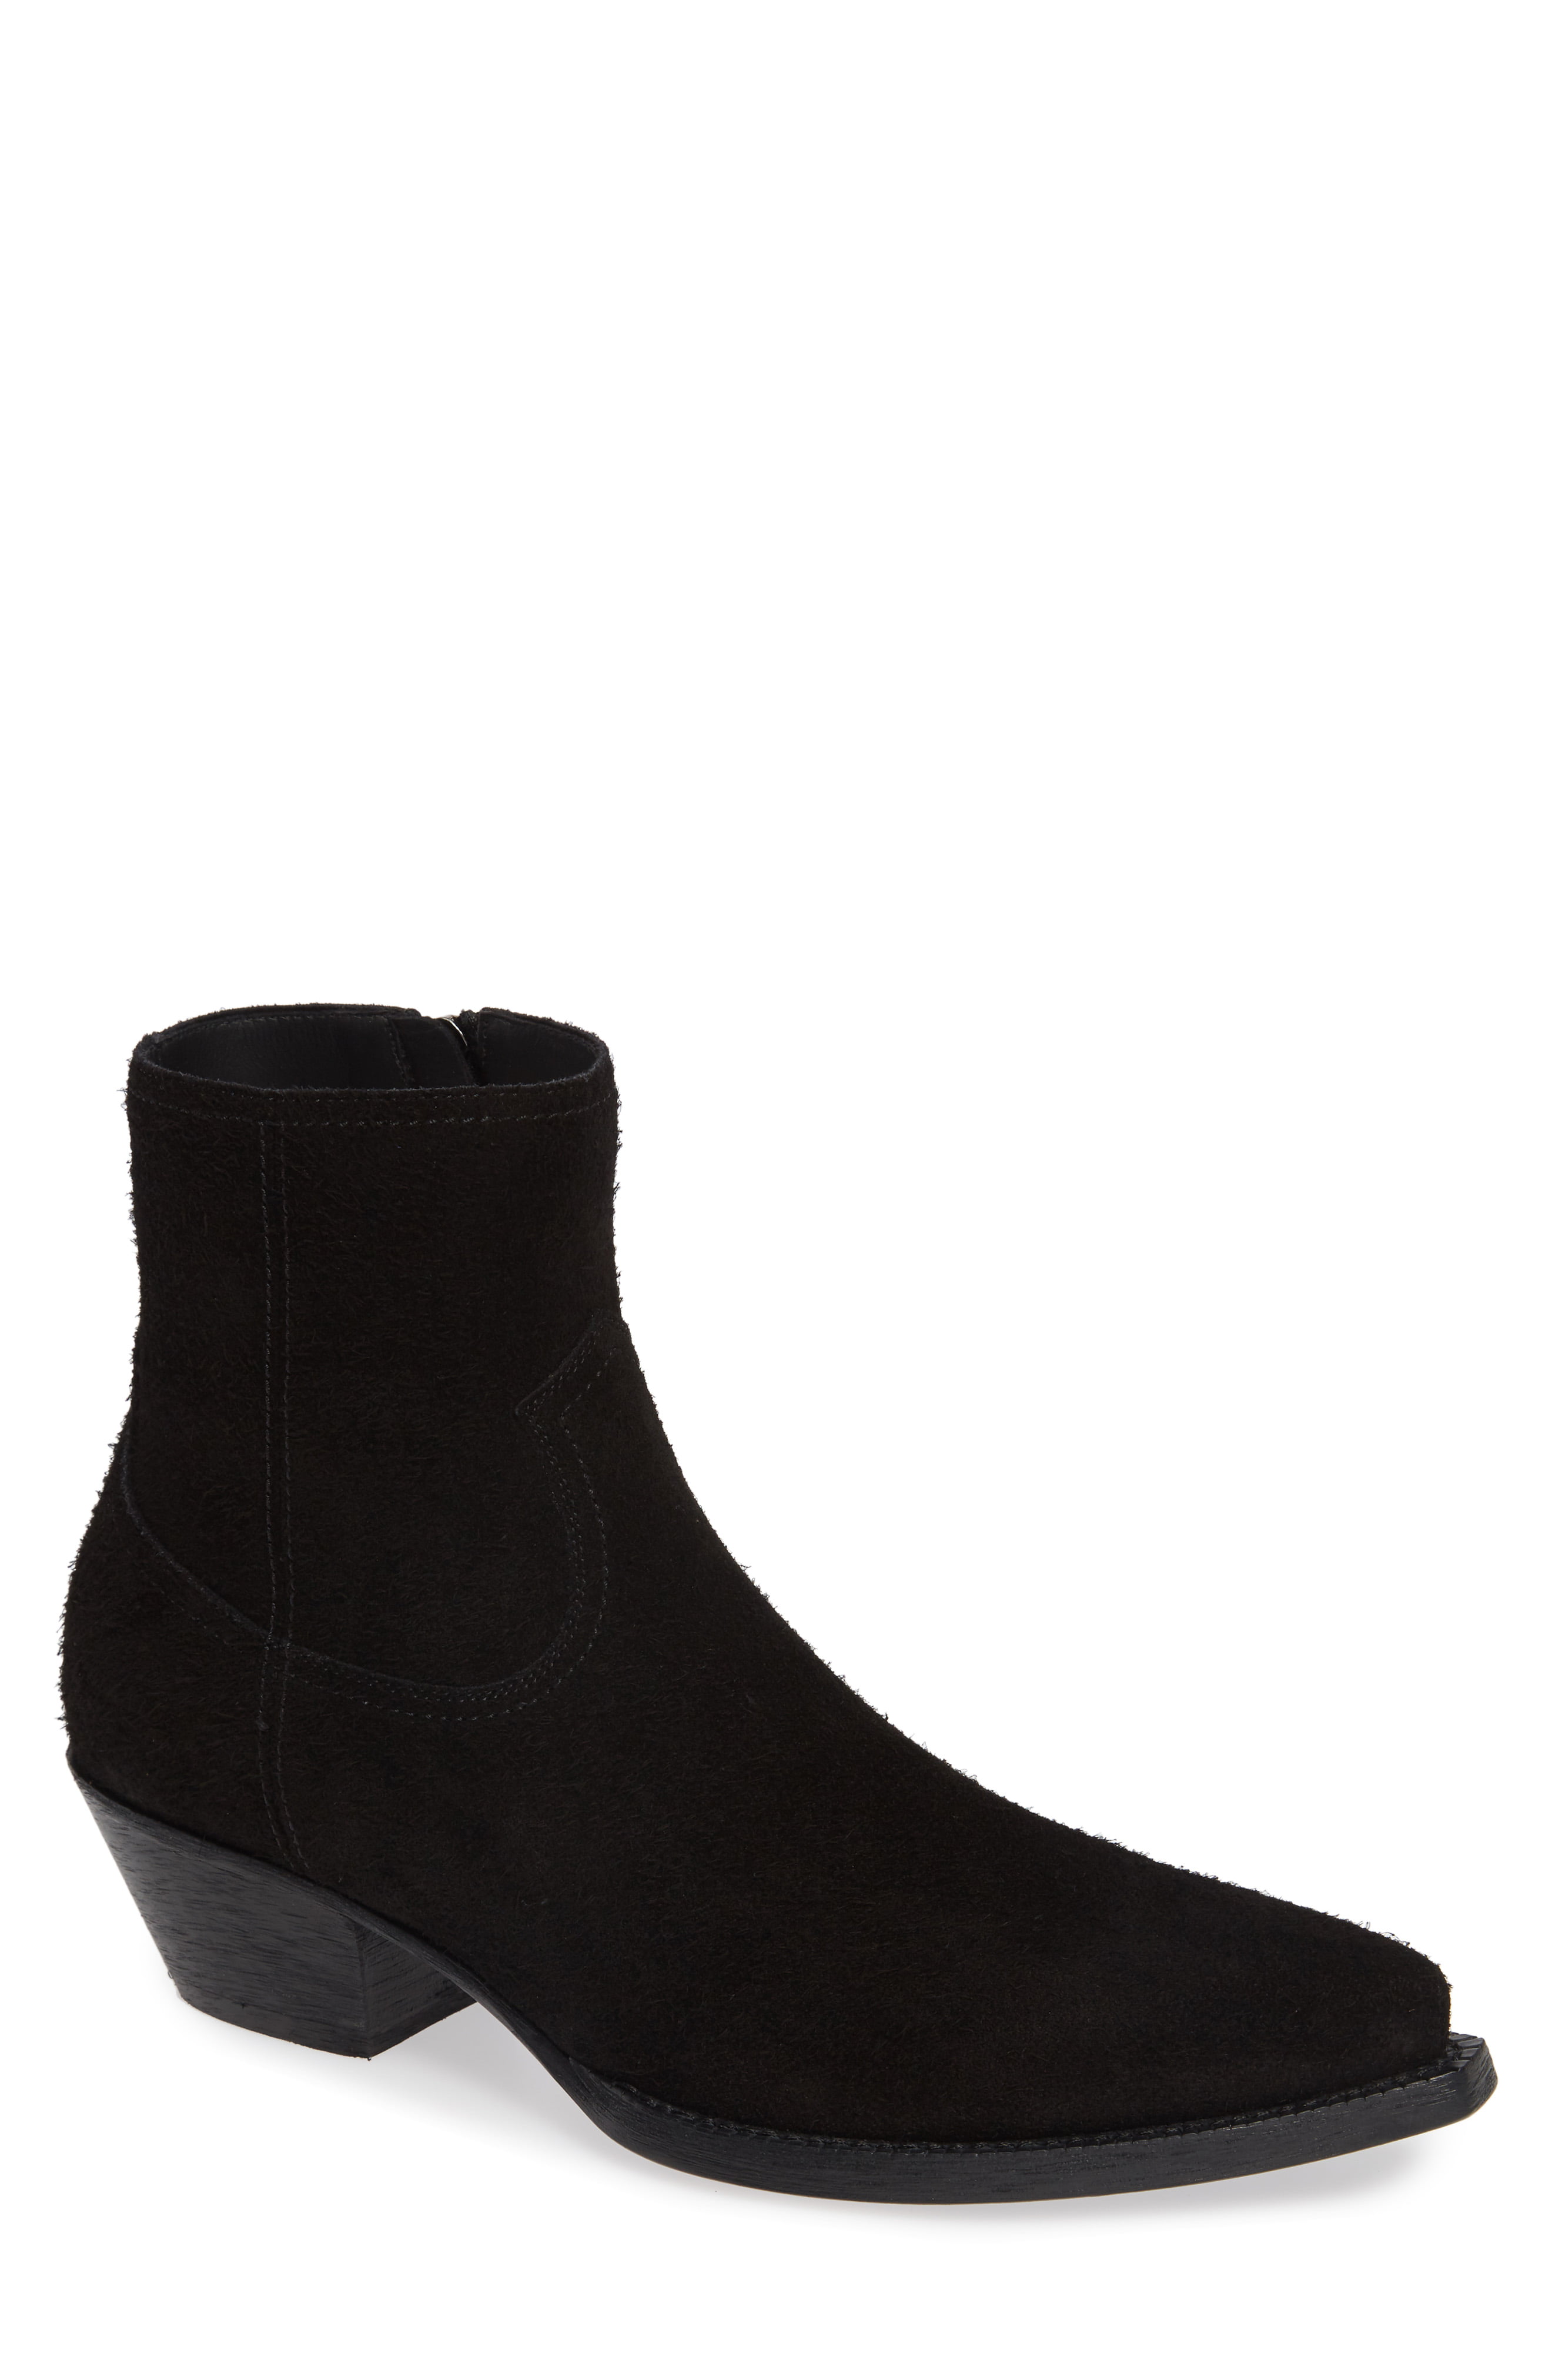 Men’s Saint Laurent Lukas Zip Boot, Size 9US / 42EU – Black | The ...